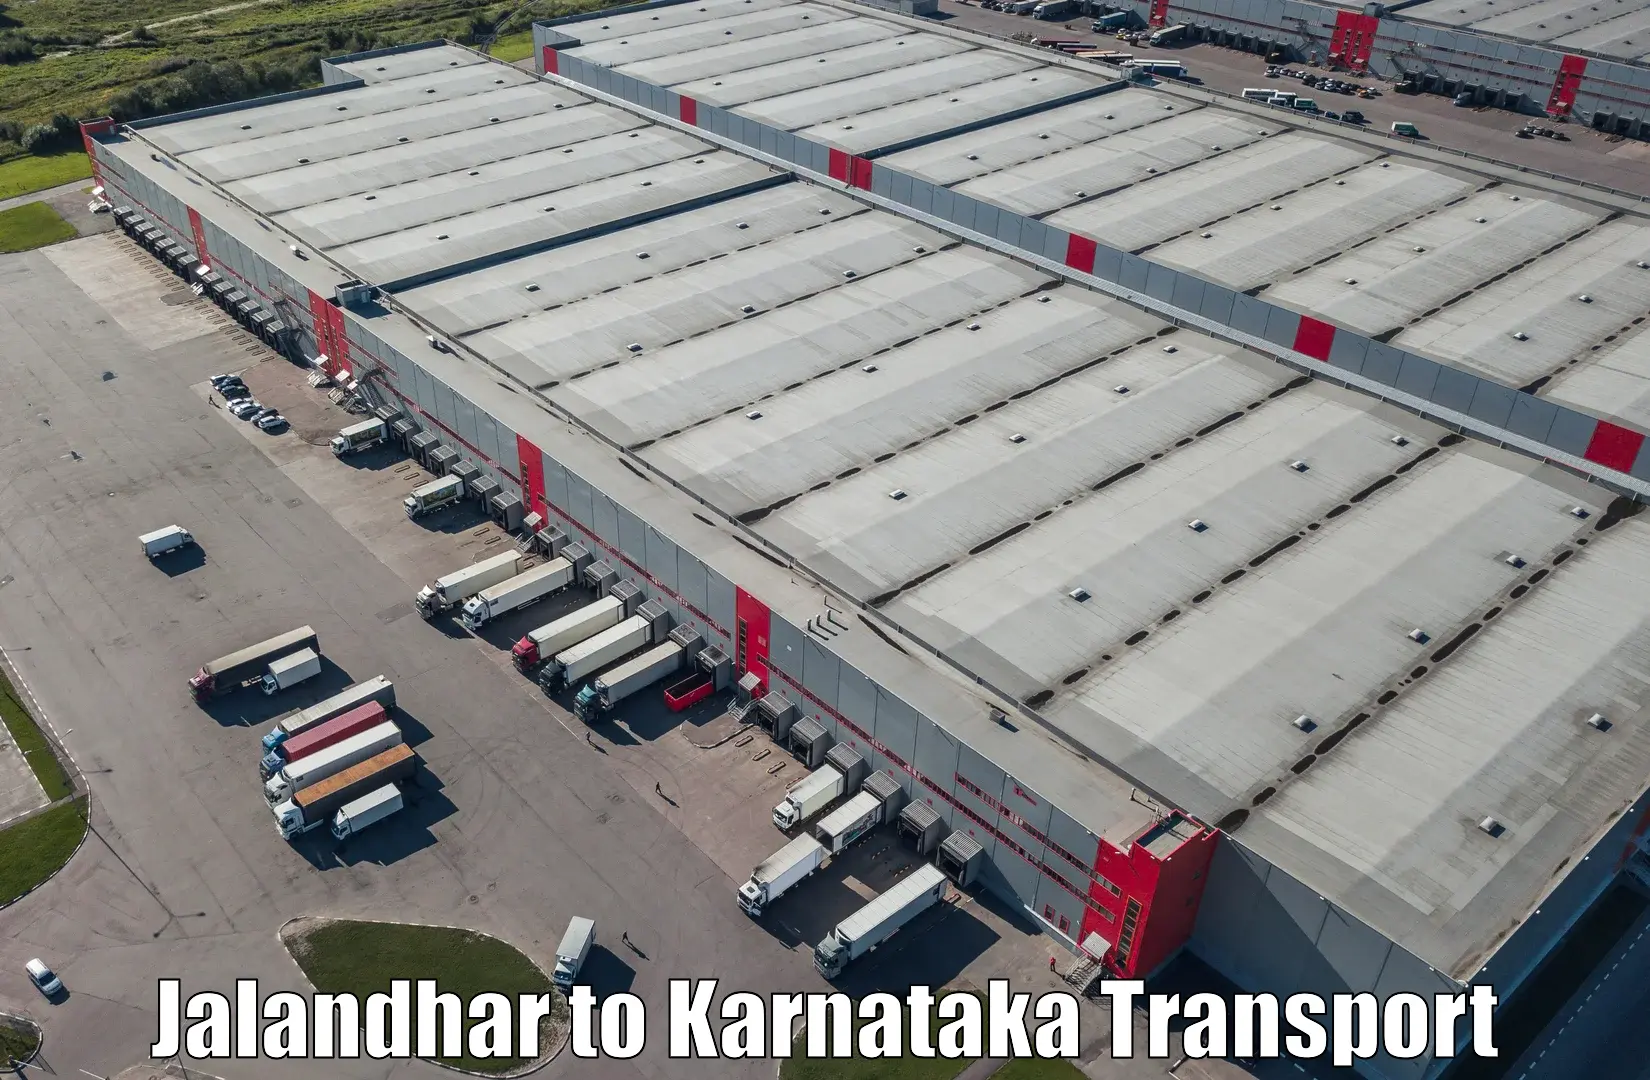 Goods delivery service Jalandhar to Srinivaspur